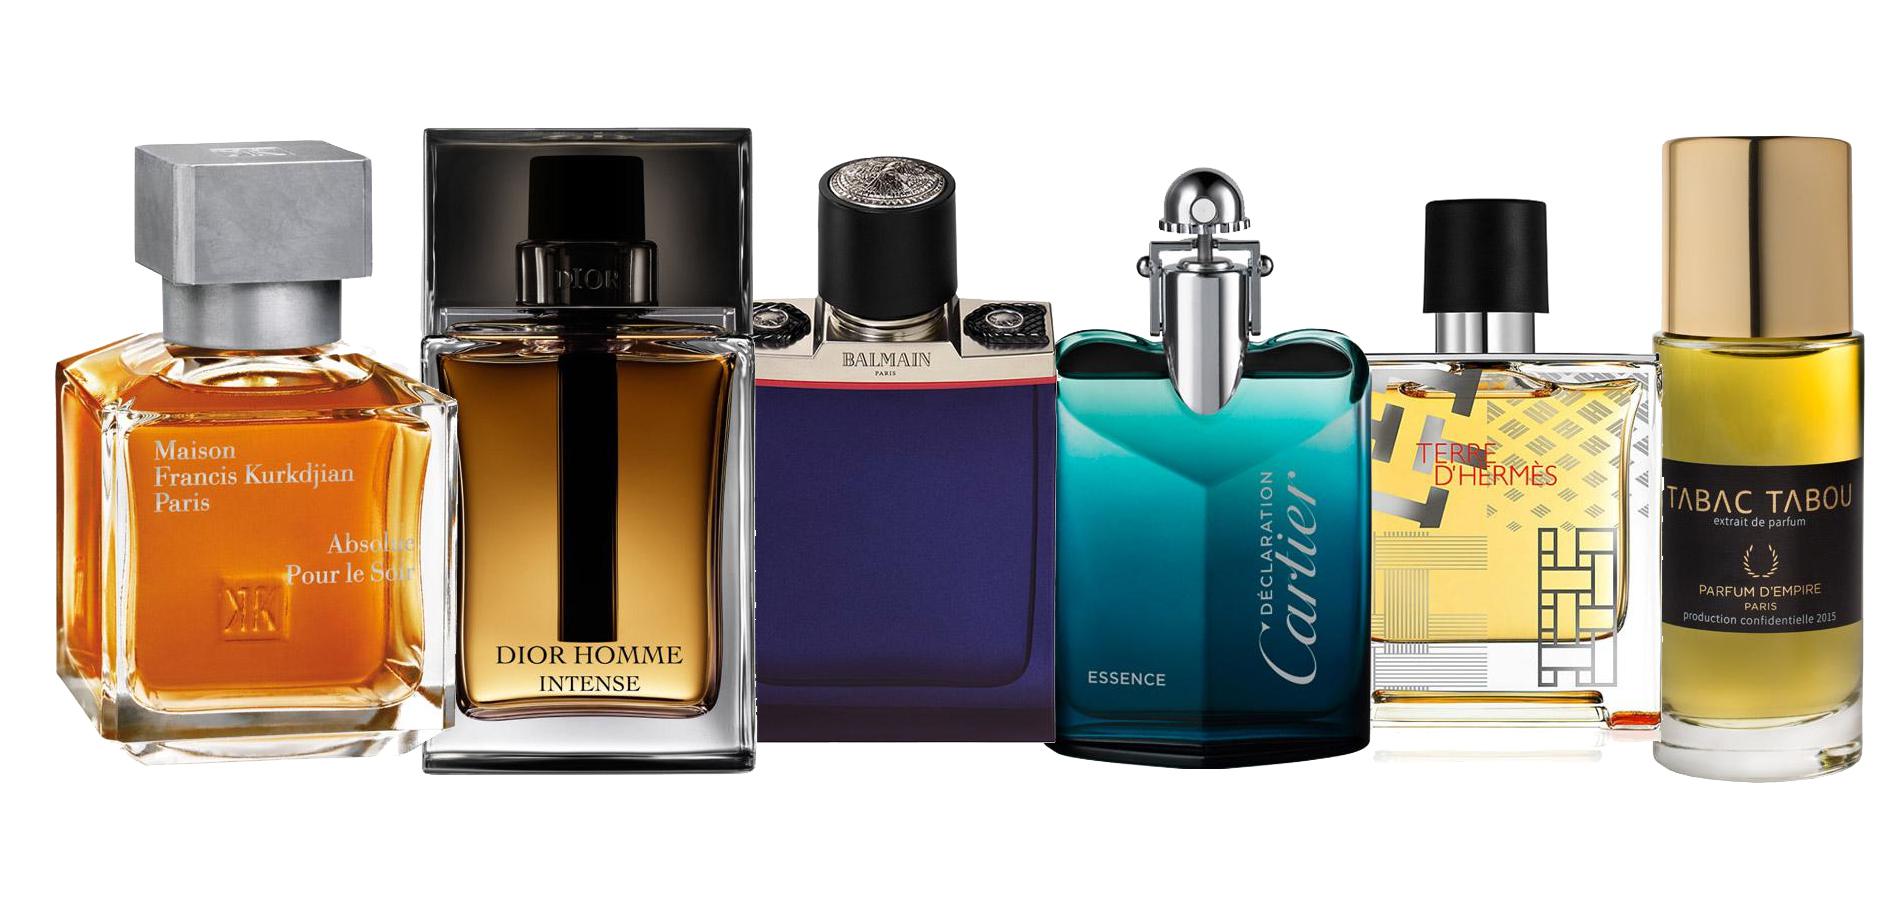 Astuces : Quel est le parfum masculin le plus vendu au monde